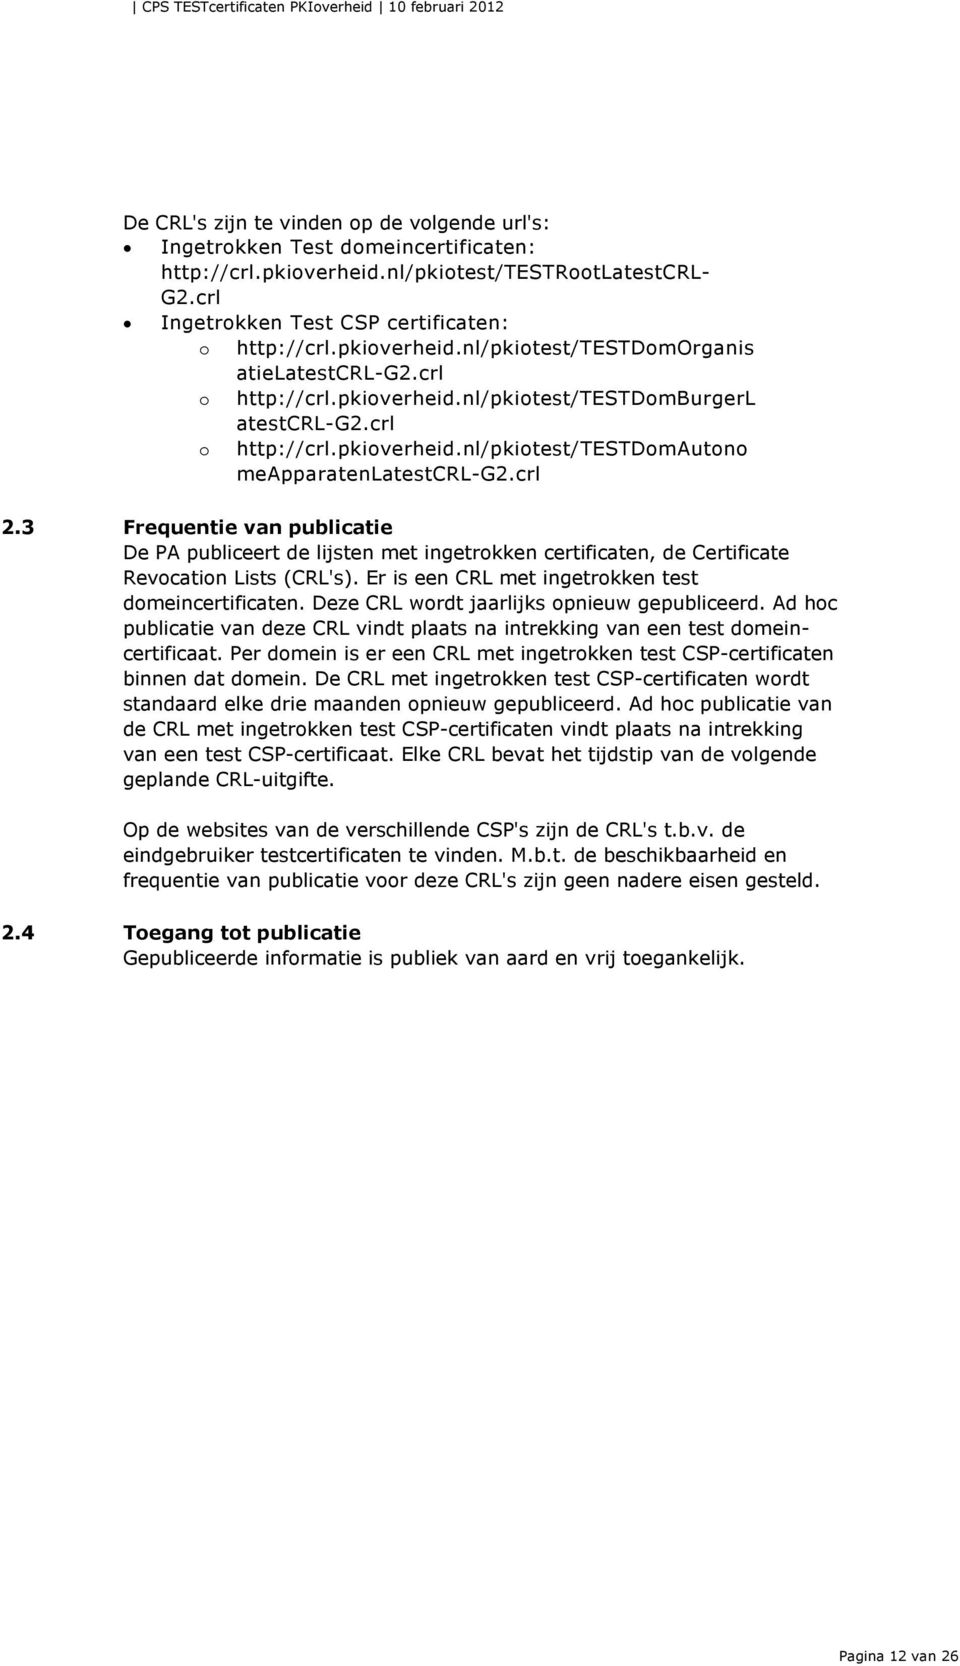 crl 2.3 Frequentie van publicatie De PA publiceert de lijsten met ingetrokken certificaten, de Certificate Revocation Lists (CRL's). Er is een CRL met ingetrokken test domeincertificaten.